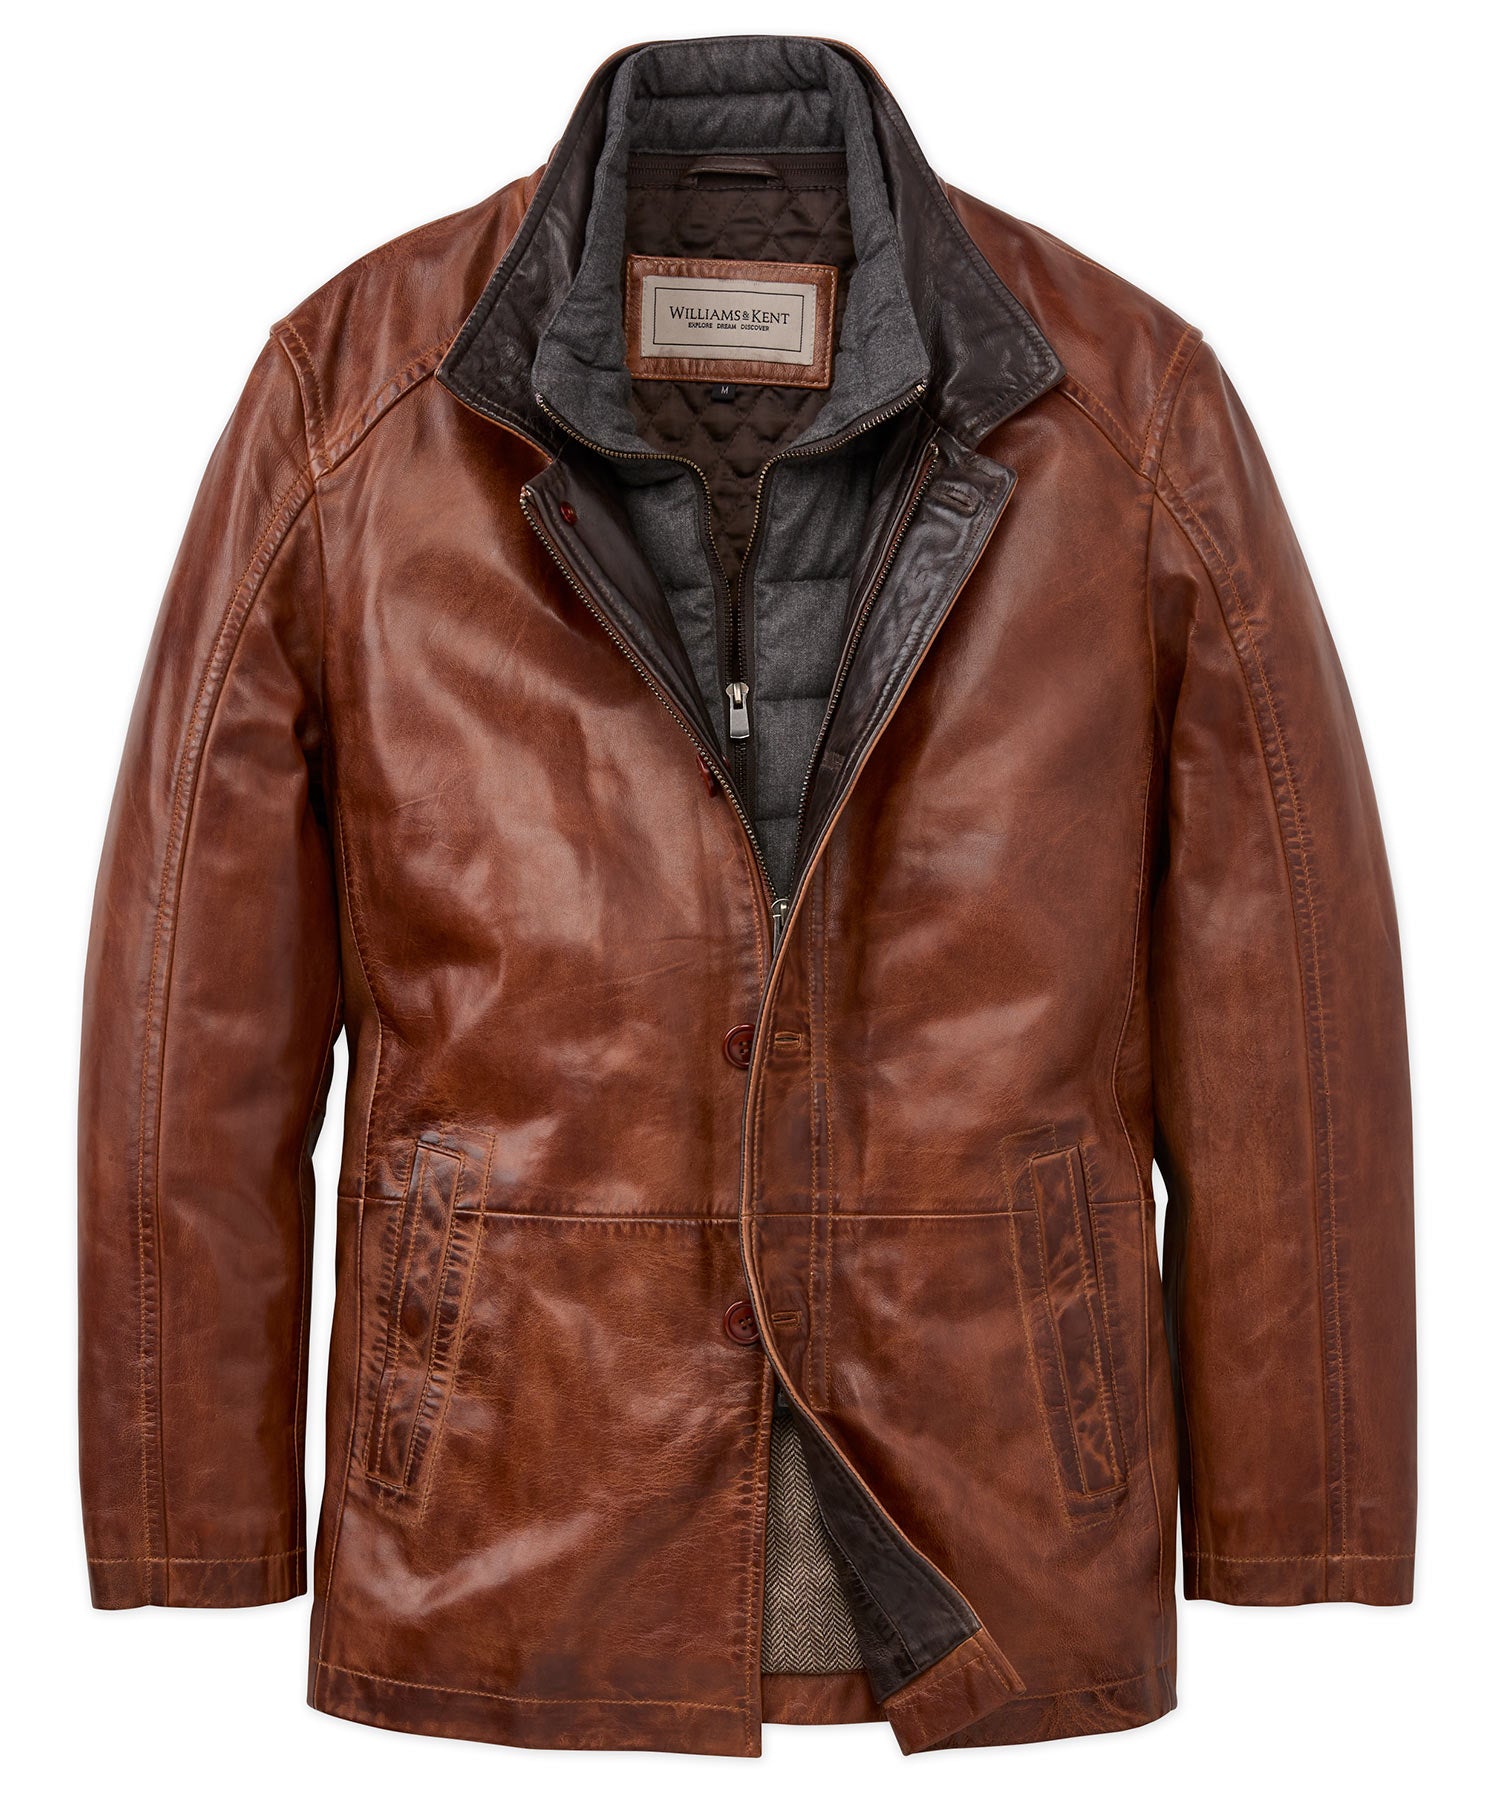 design rum leather riders jacket vintage | www.innoveering.net